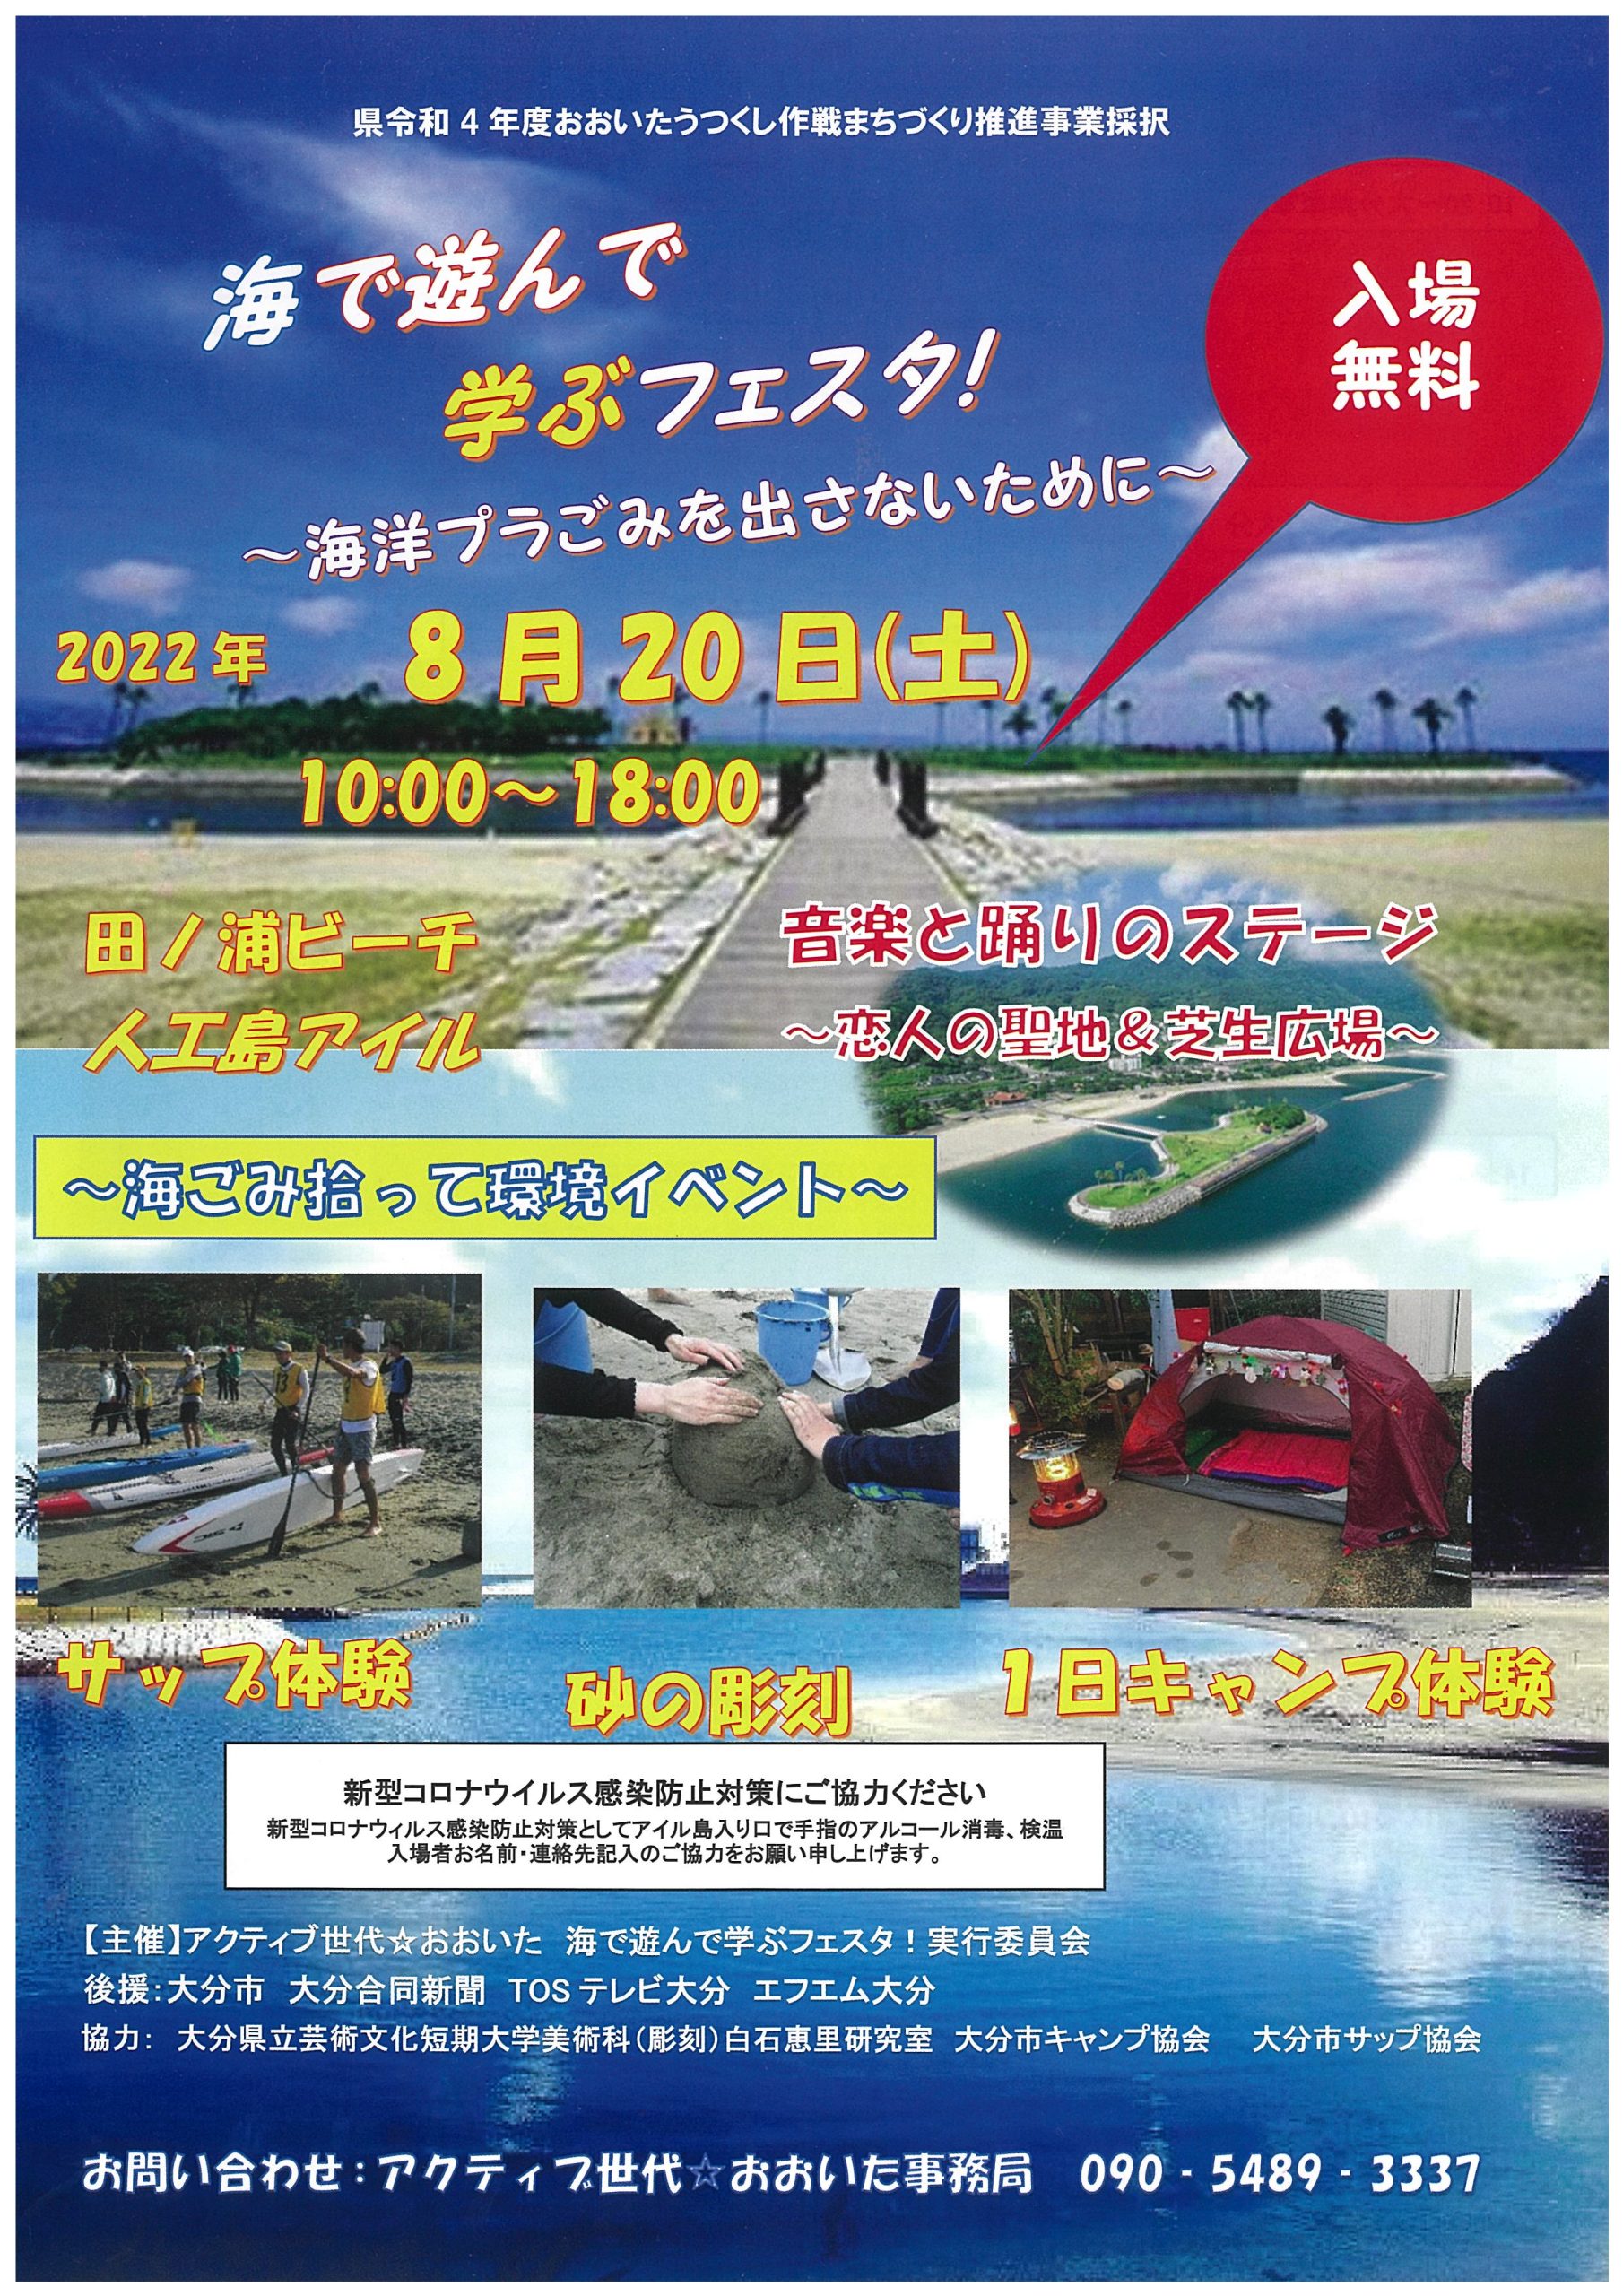 大分 海で遊んで学ぶフェスタ 日本キャンプ協会